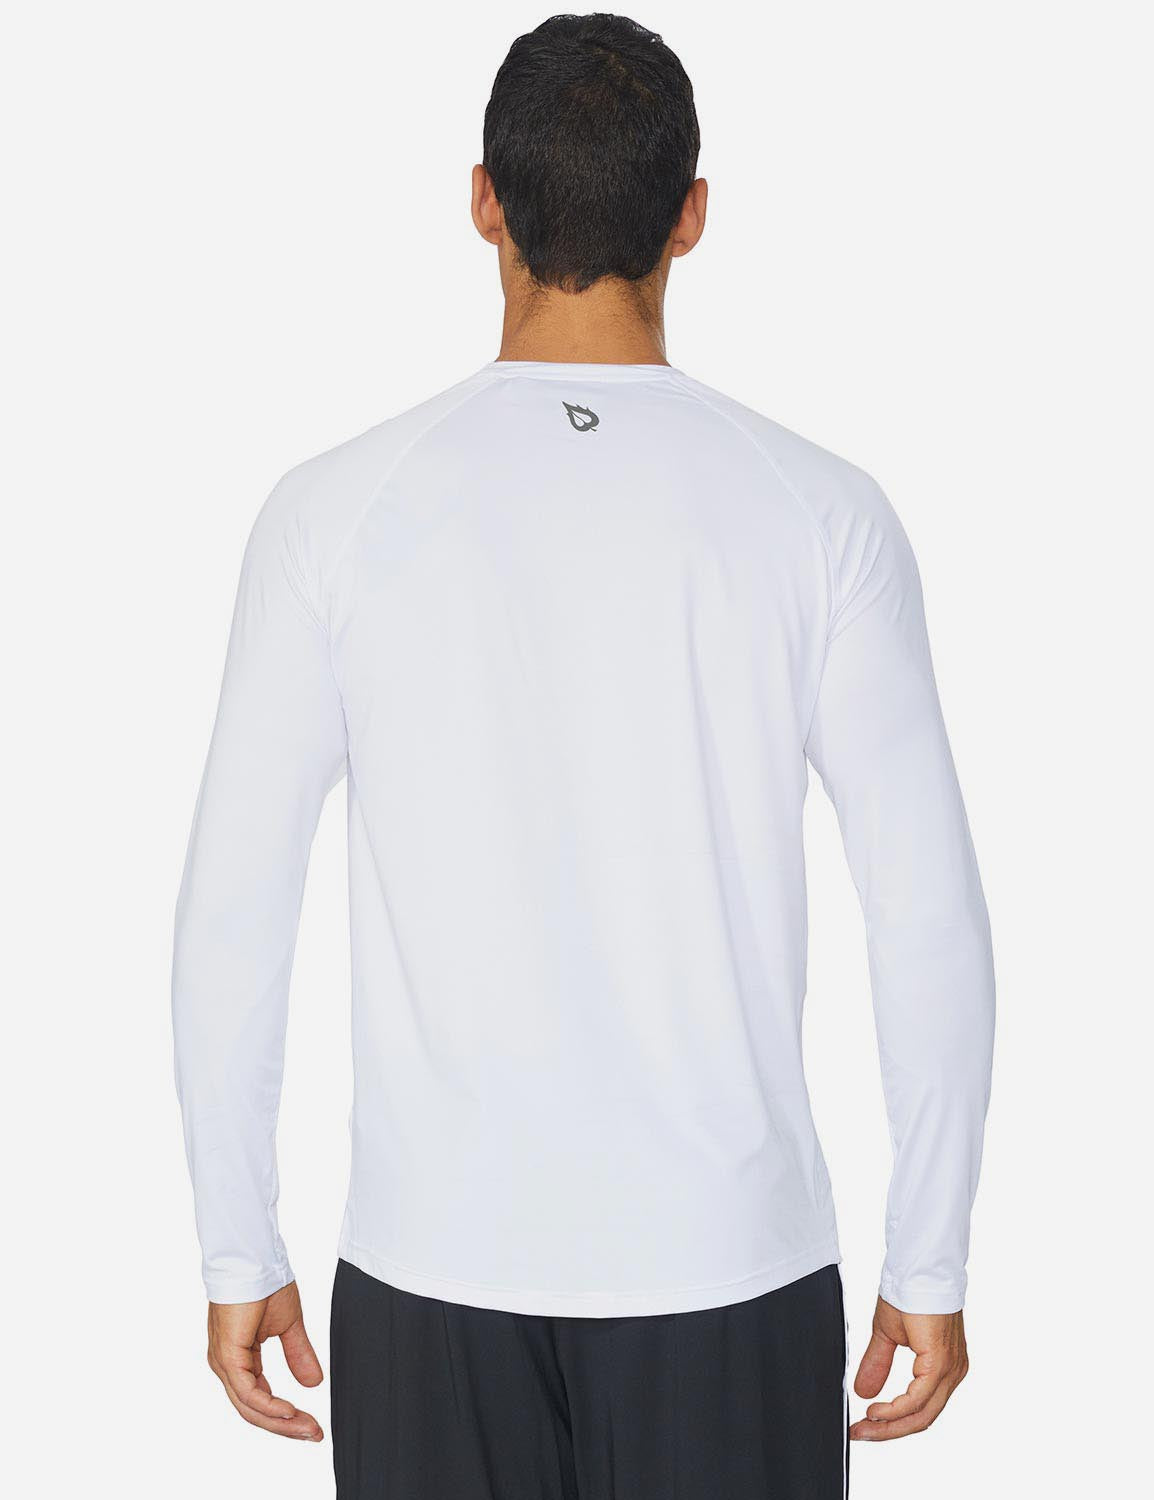 Baleaf Men's Workout Crew-Neck Slim-Cut Long Sleeved Shirt abd195 White  Back